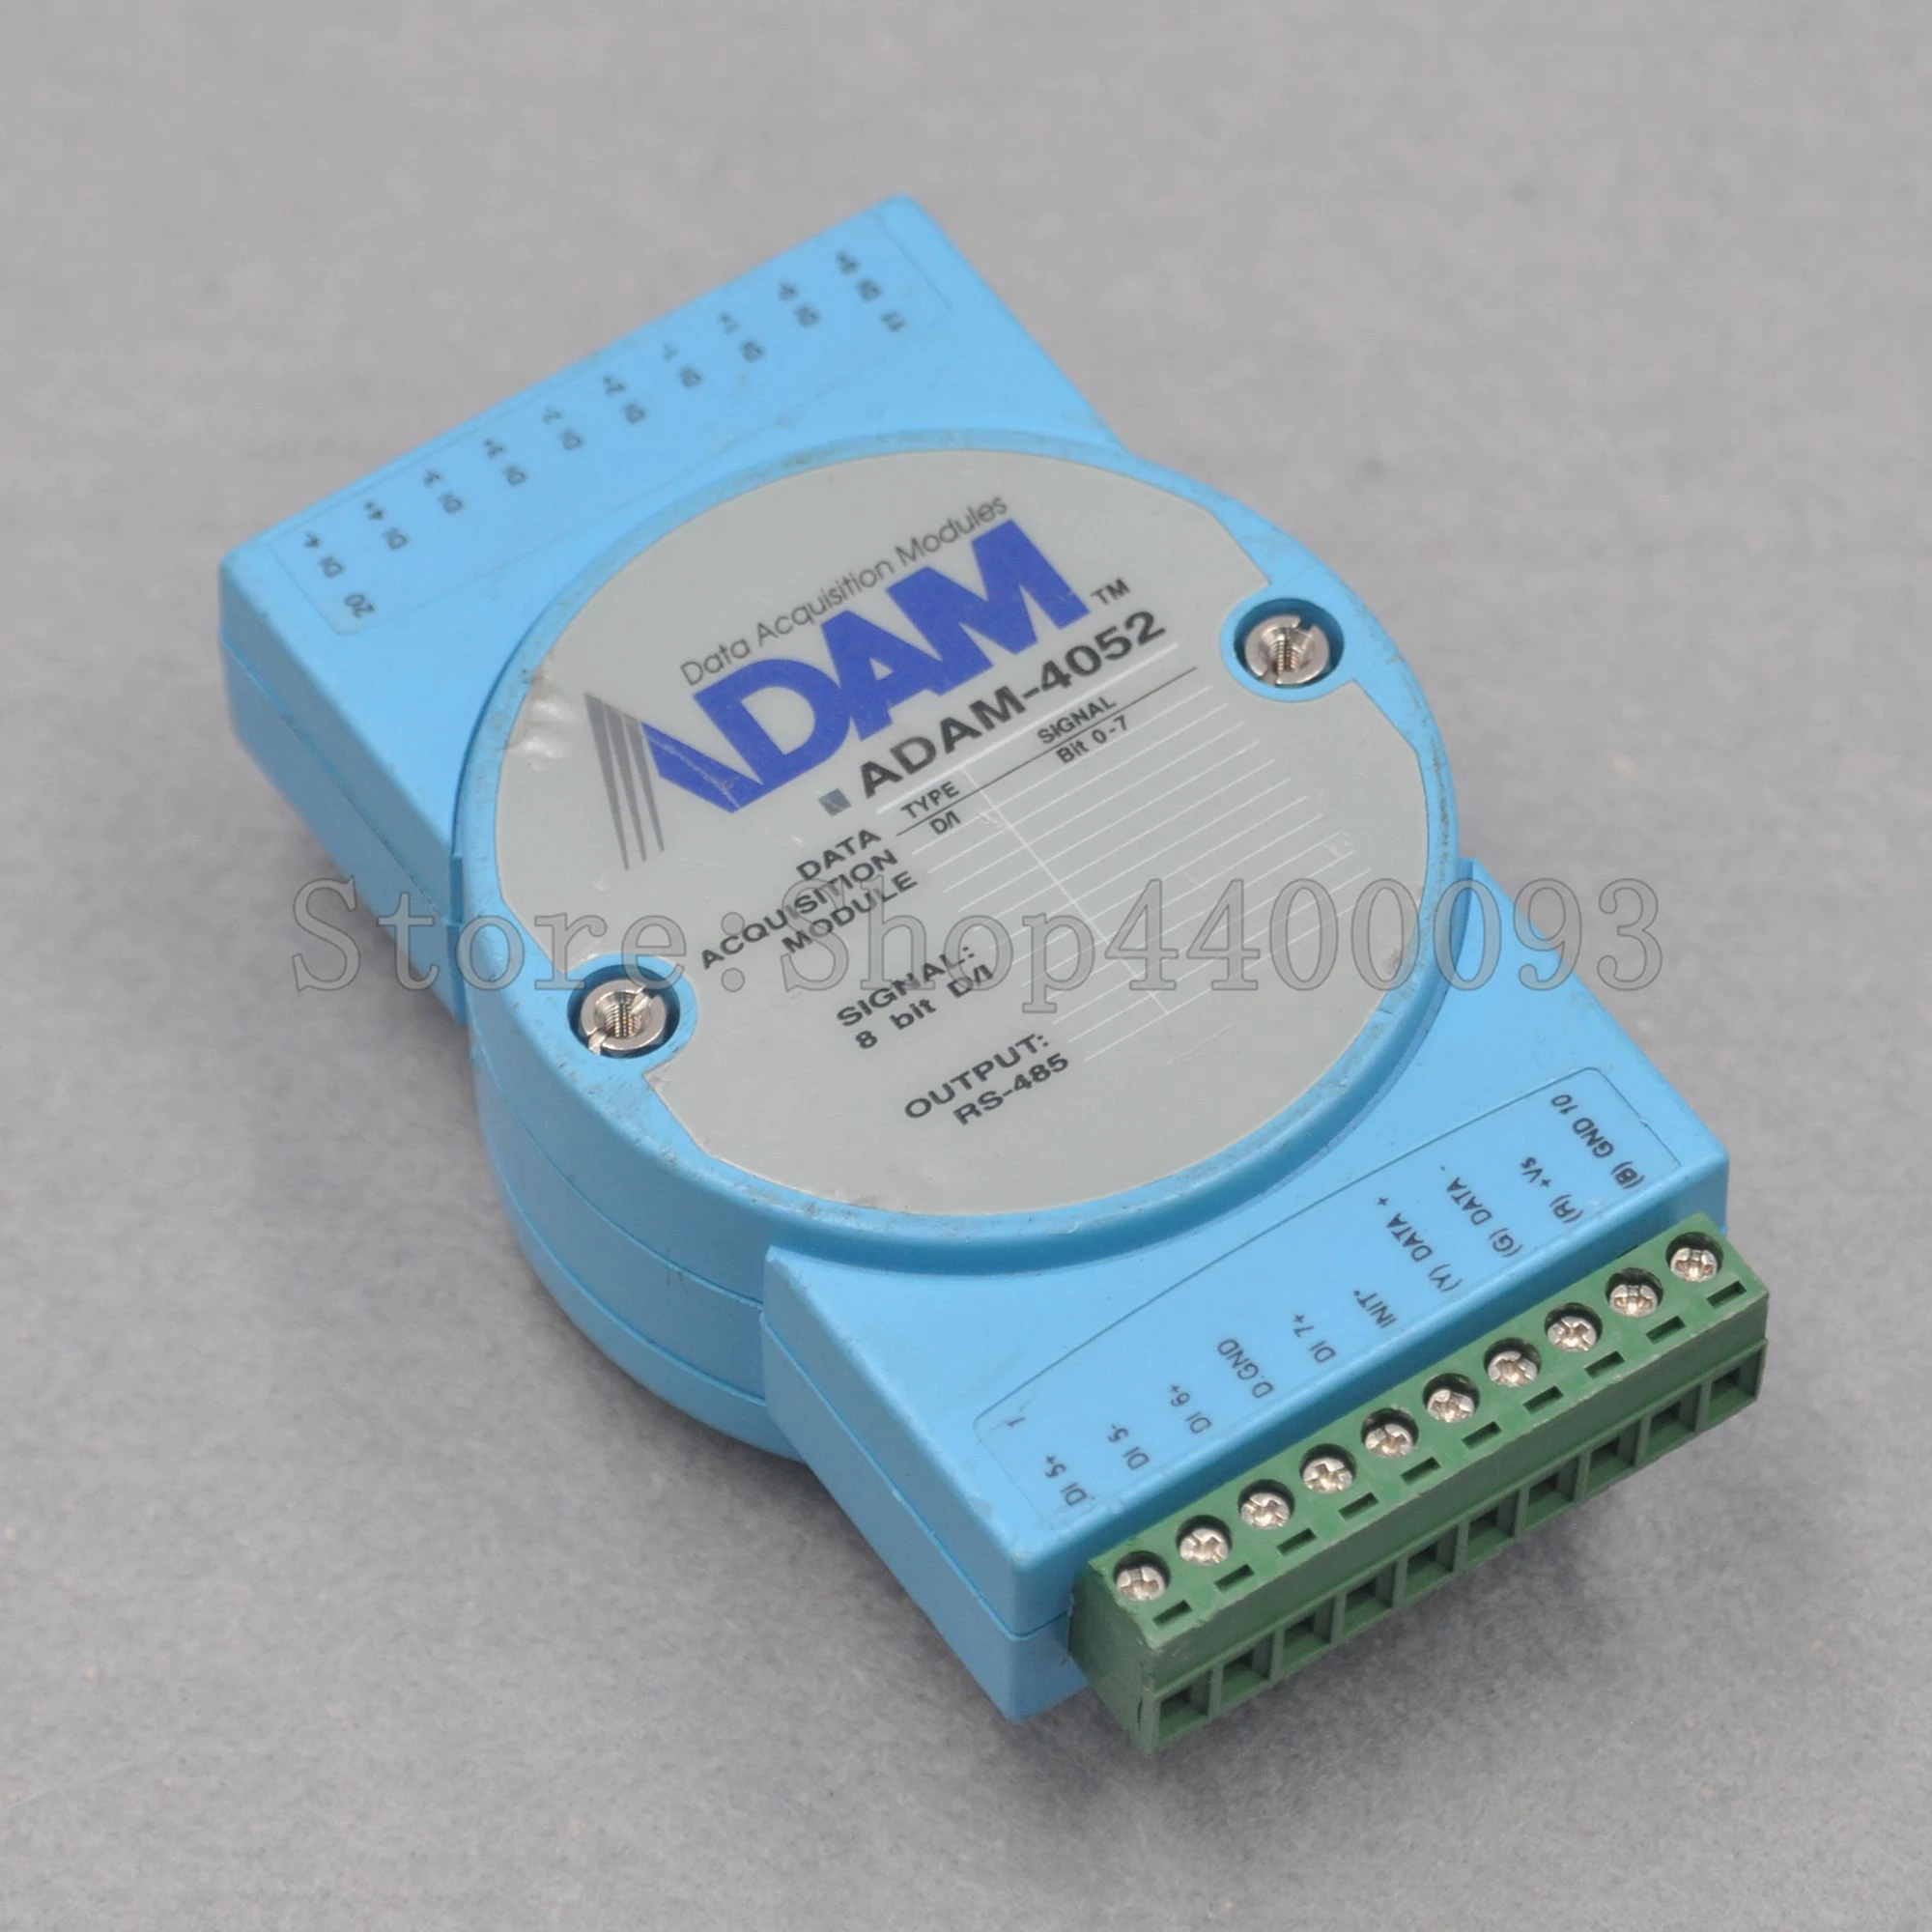 ADVANTECH ADAM-4052 8 Isolated Digital Input Module